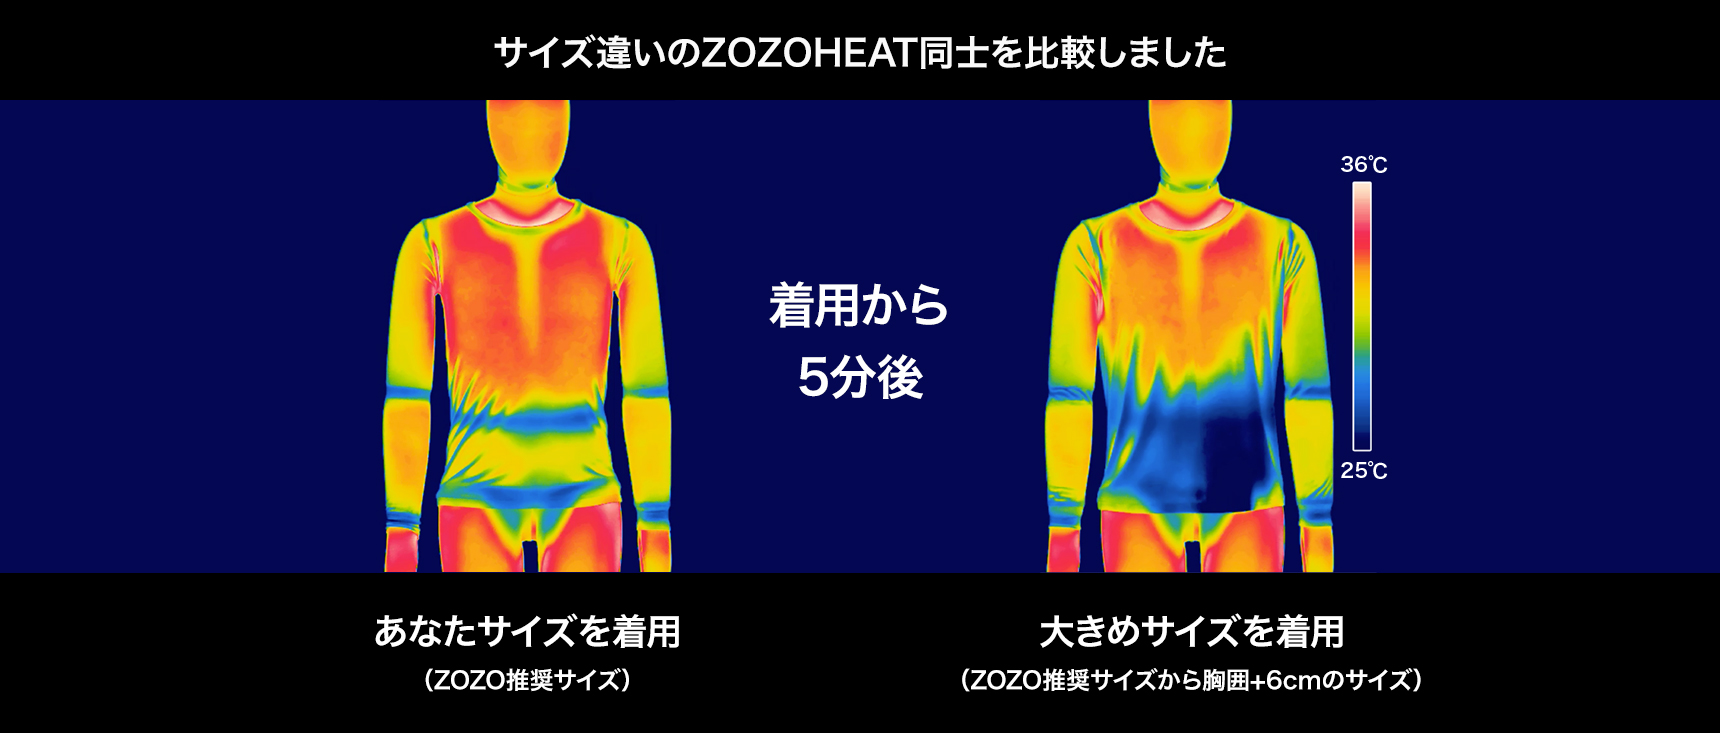 プライベートブランド 「ZOZO」、「あなたサイズ」で暖かい吸湿発熱 ...